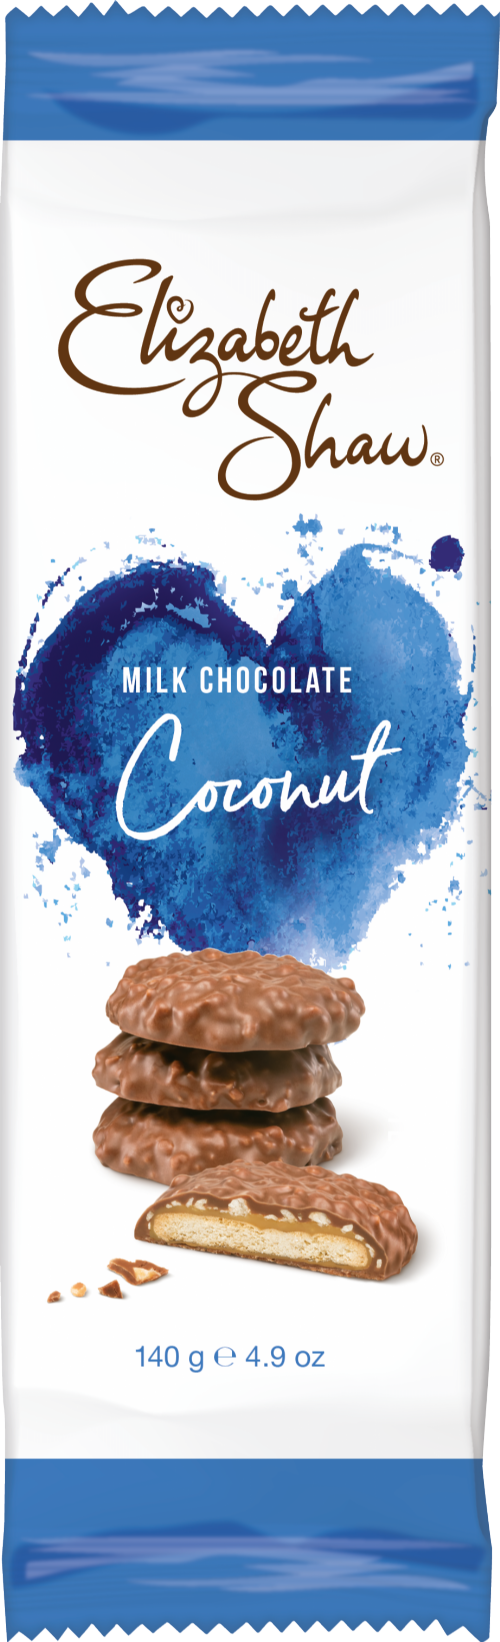 ELIZABETH SHAW Milk Chocolate Coconut Biscuits 140g